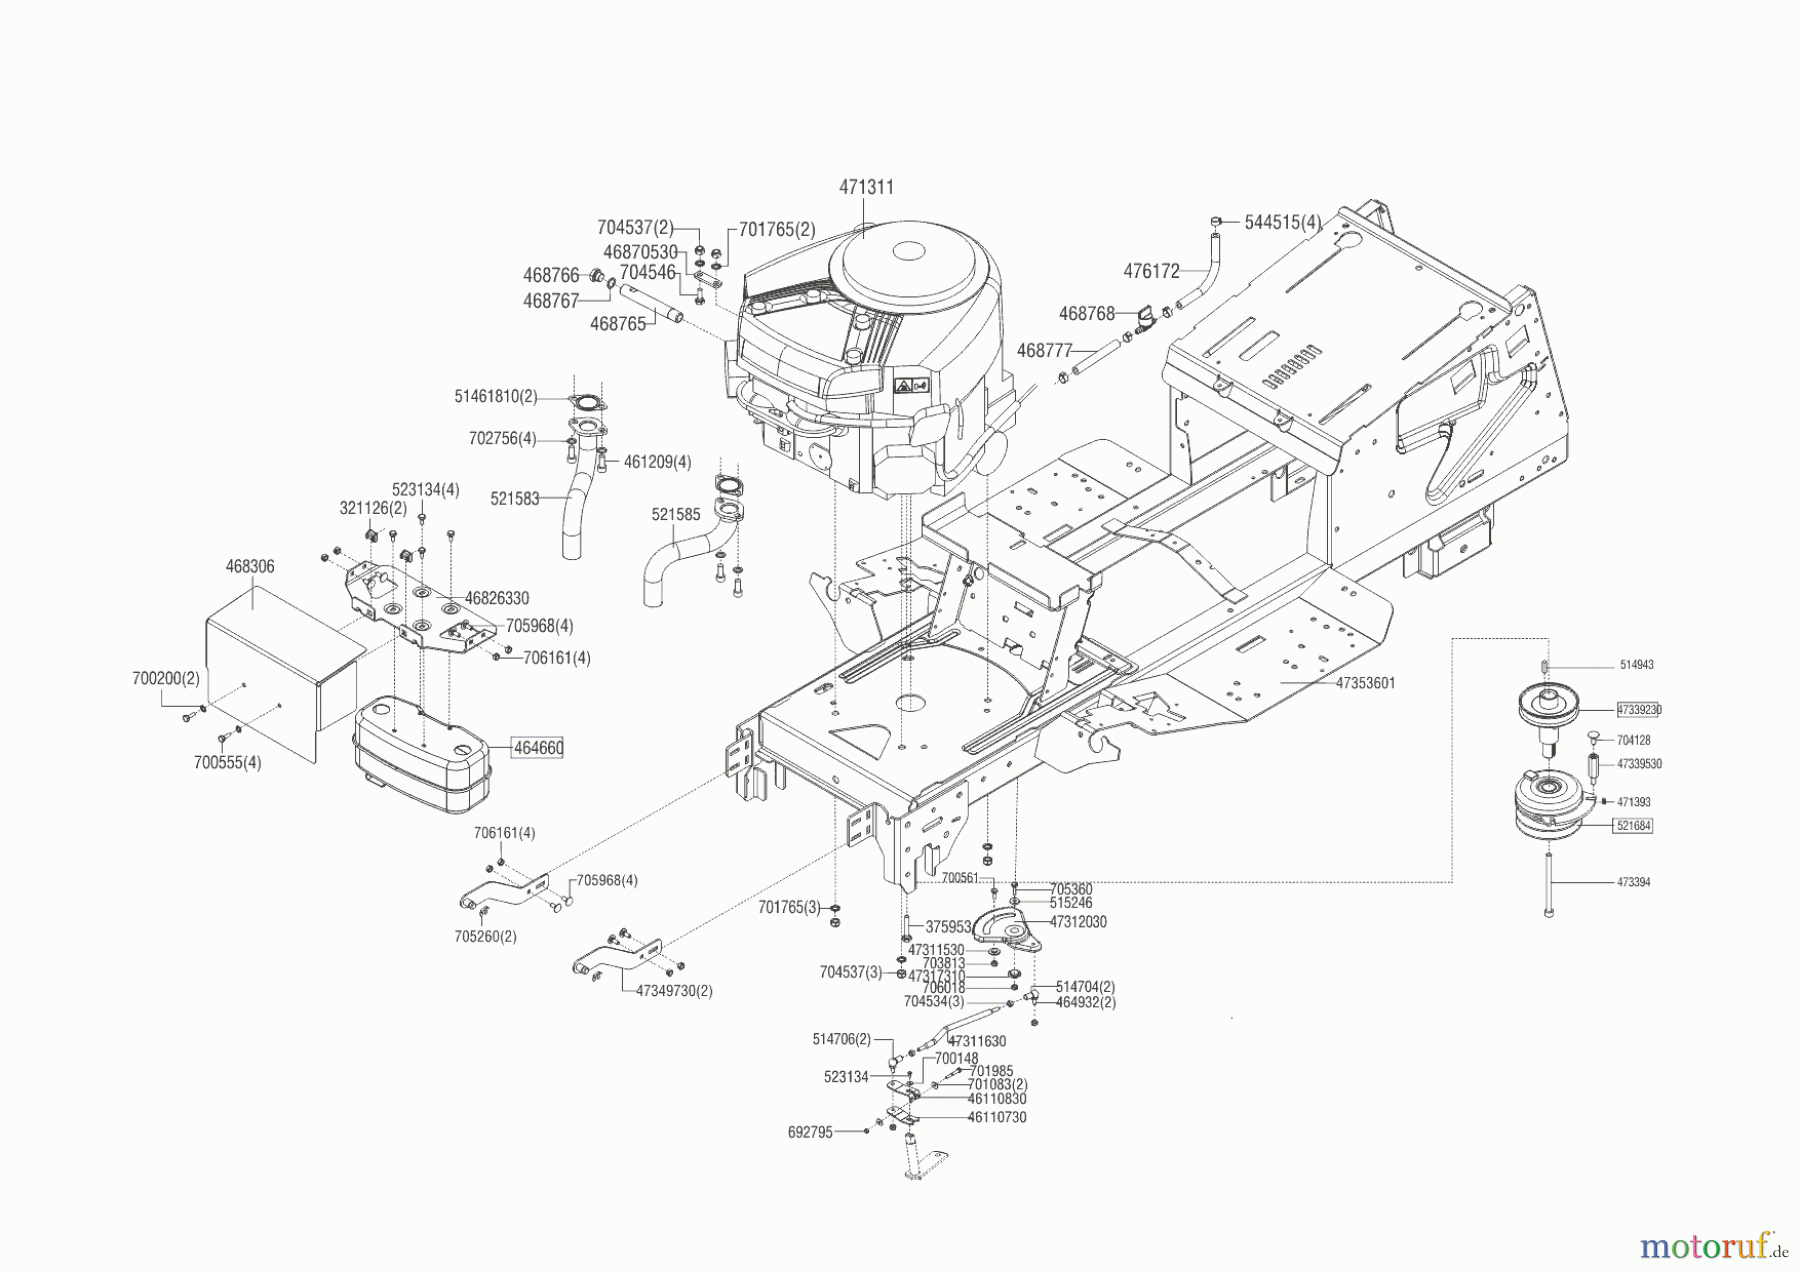  Powerline Gartentechnik Rasentraktor T 16-105.4 HD V2  05/2016 - 09/2016 Seite 2